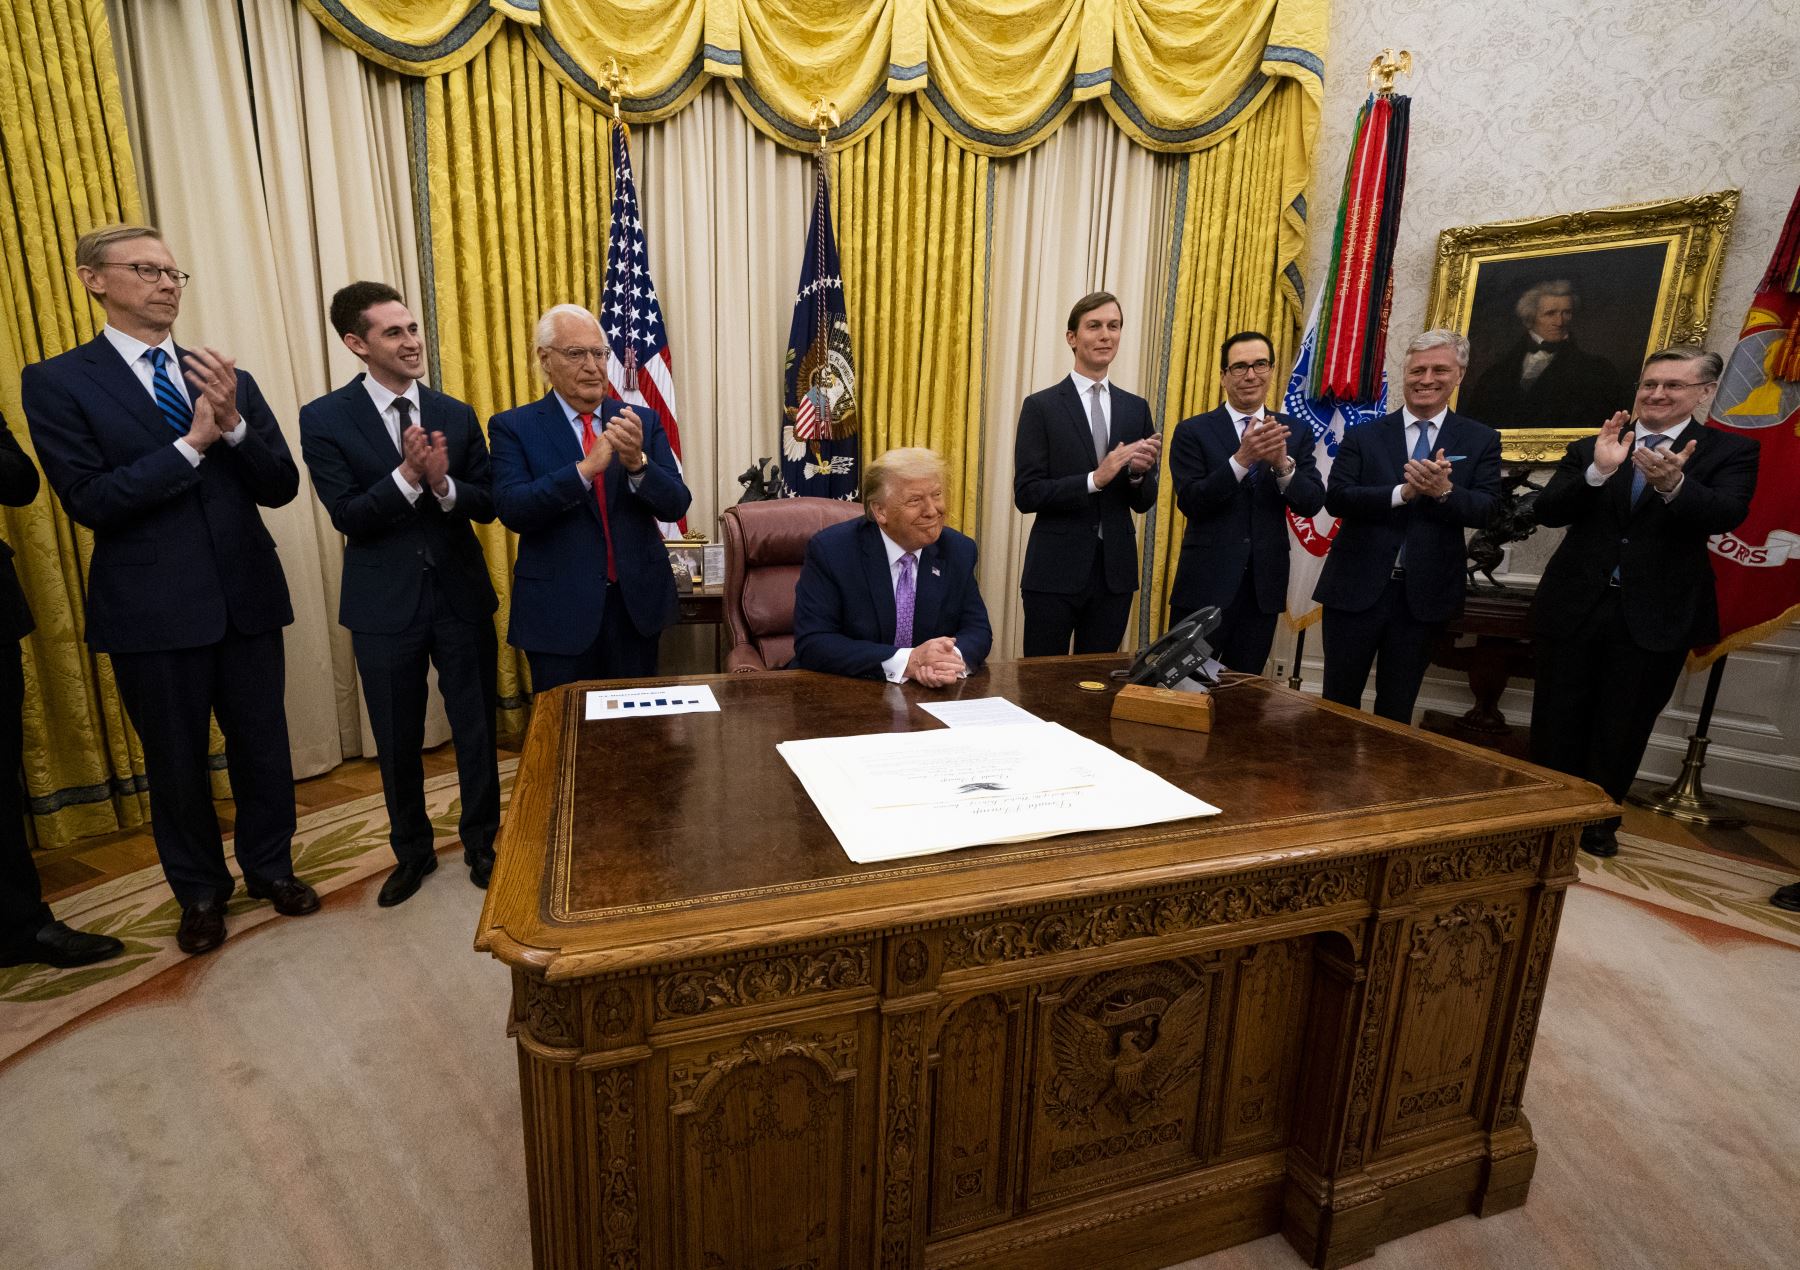 El presidente de los Estados Unidos, Donald Trump, lidera una reunión con líderes de Israel y los Emiratos Árabes Unidos anunciando un acuerdo de paz para establecer relaciones diplomáticas con Israel y los Emiratos Árabes Unidos, en la Oficina Oval de la Casa Blanca. Foto: AFP